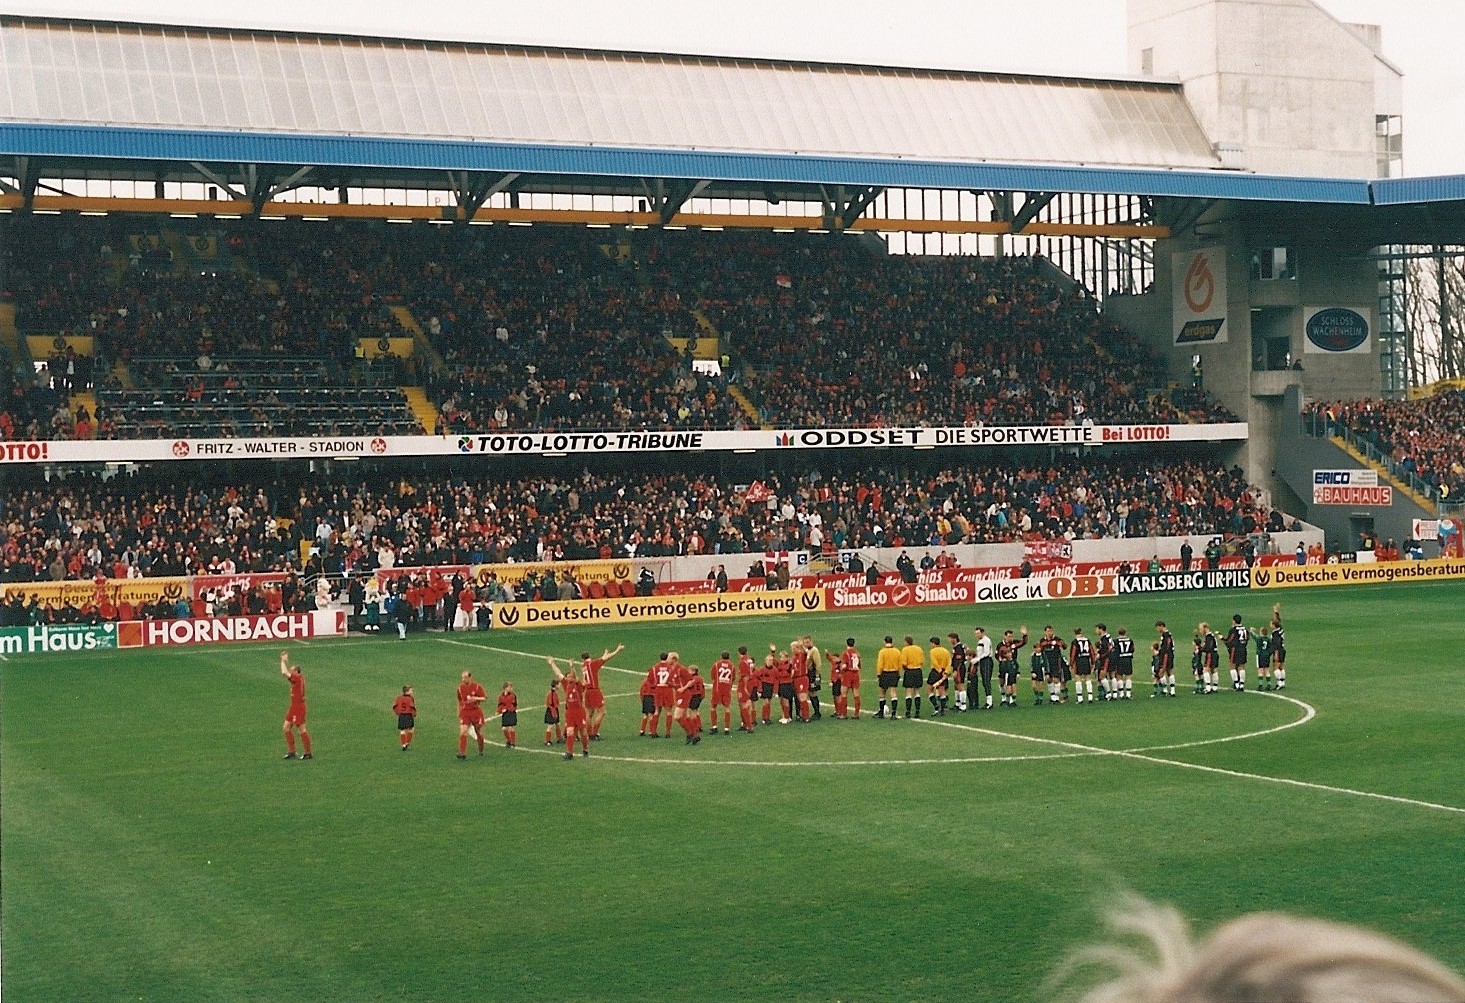 Fritz-Walter-Stadion 15-04-2000.jpg